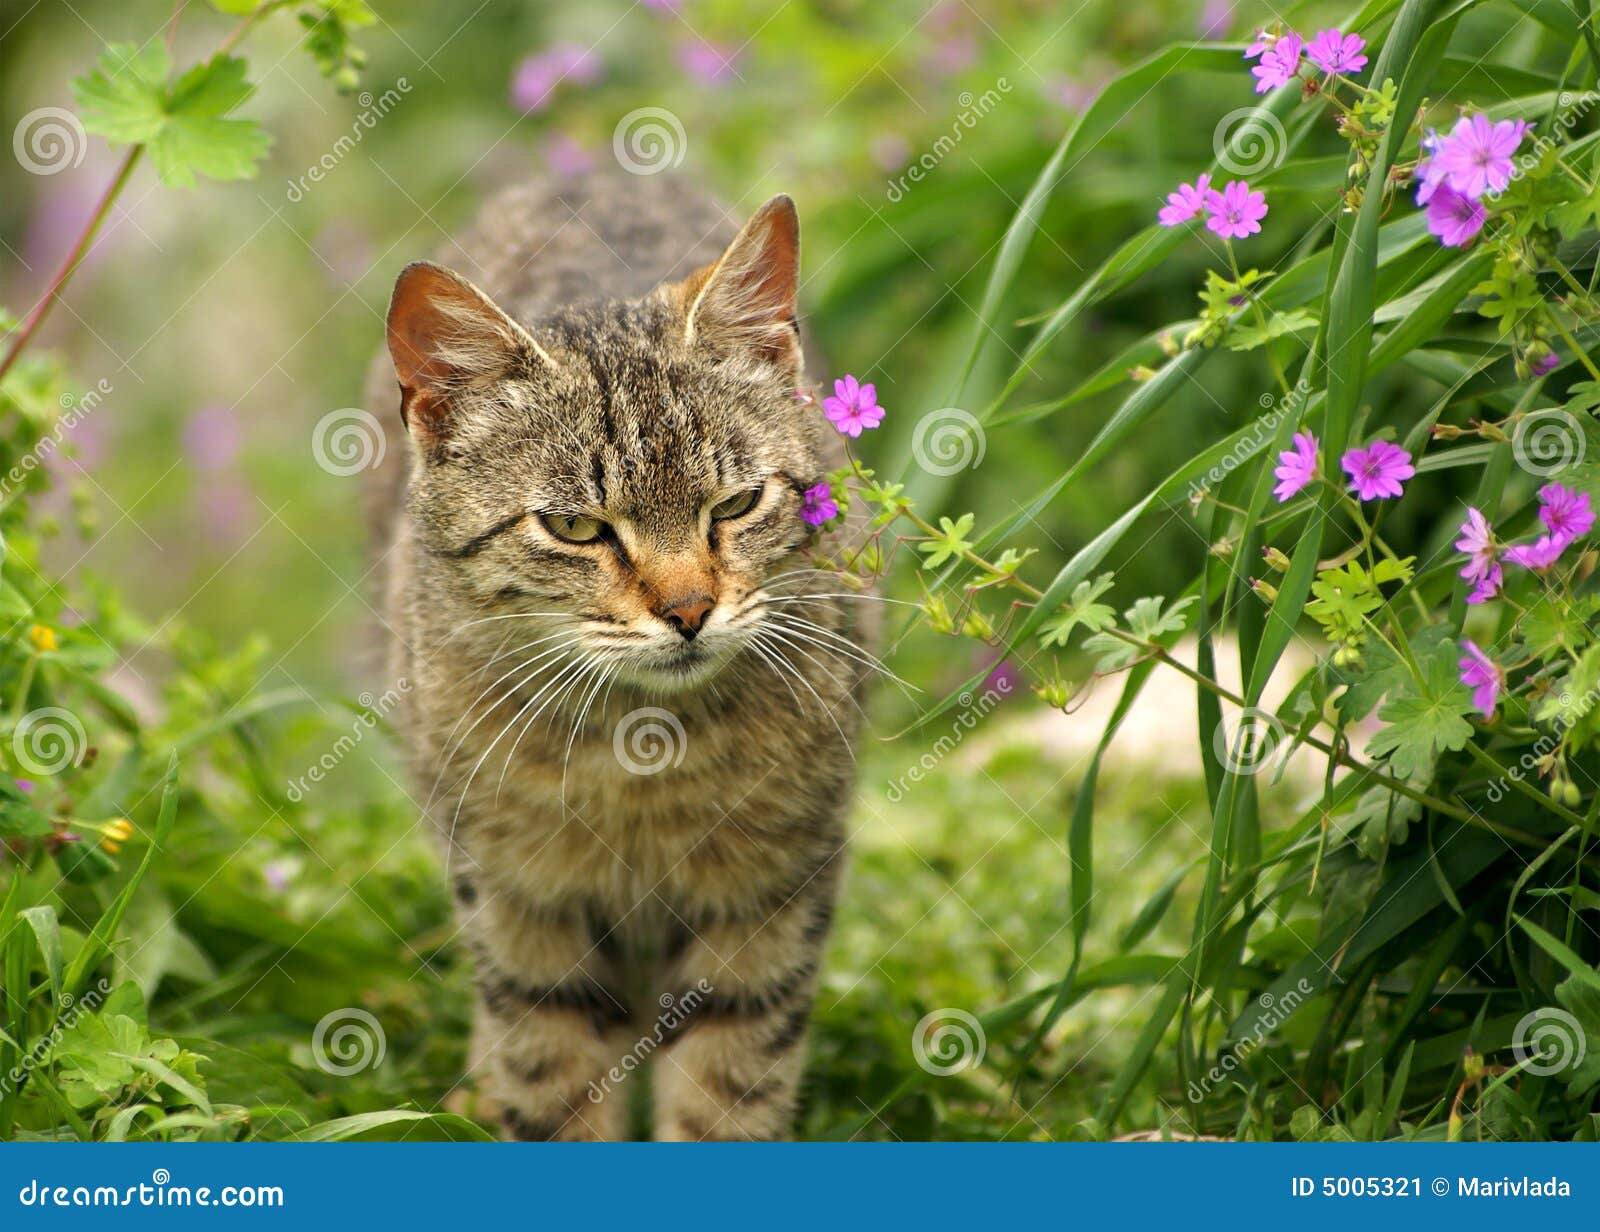 image stock chat gris au printemps fleurissant la nature image